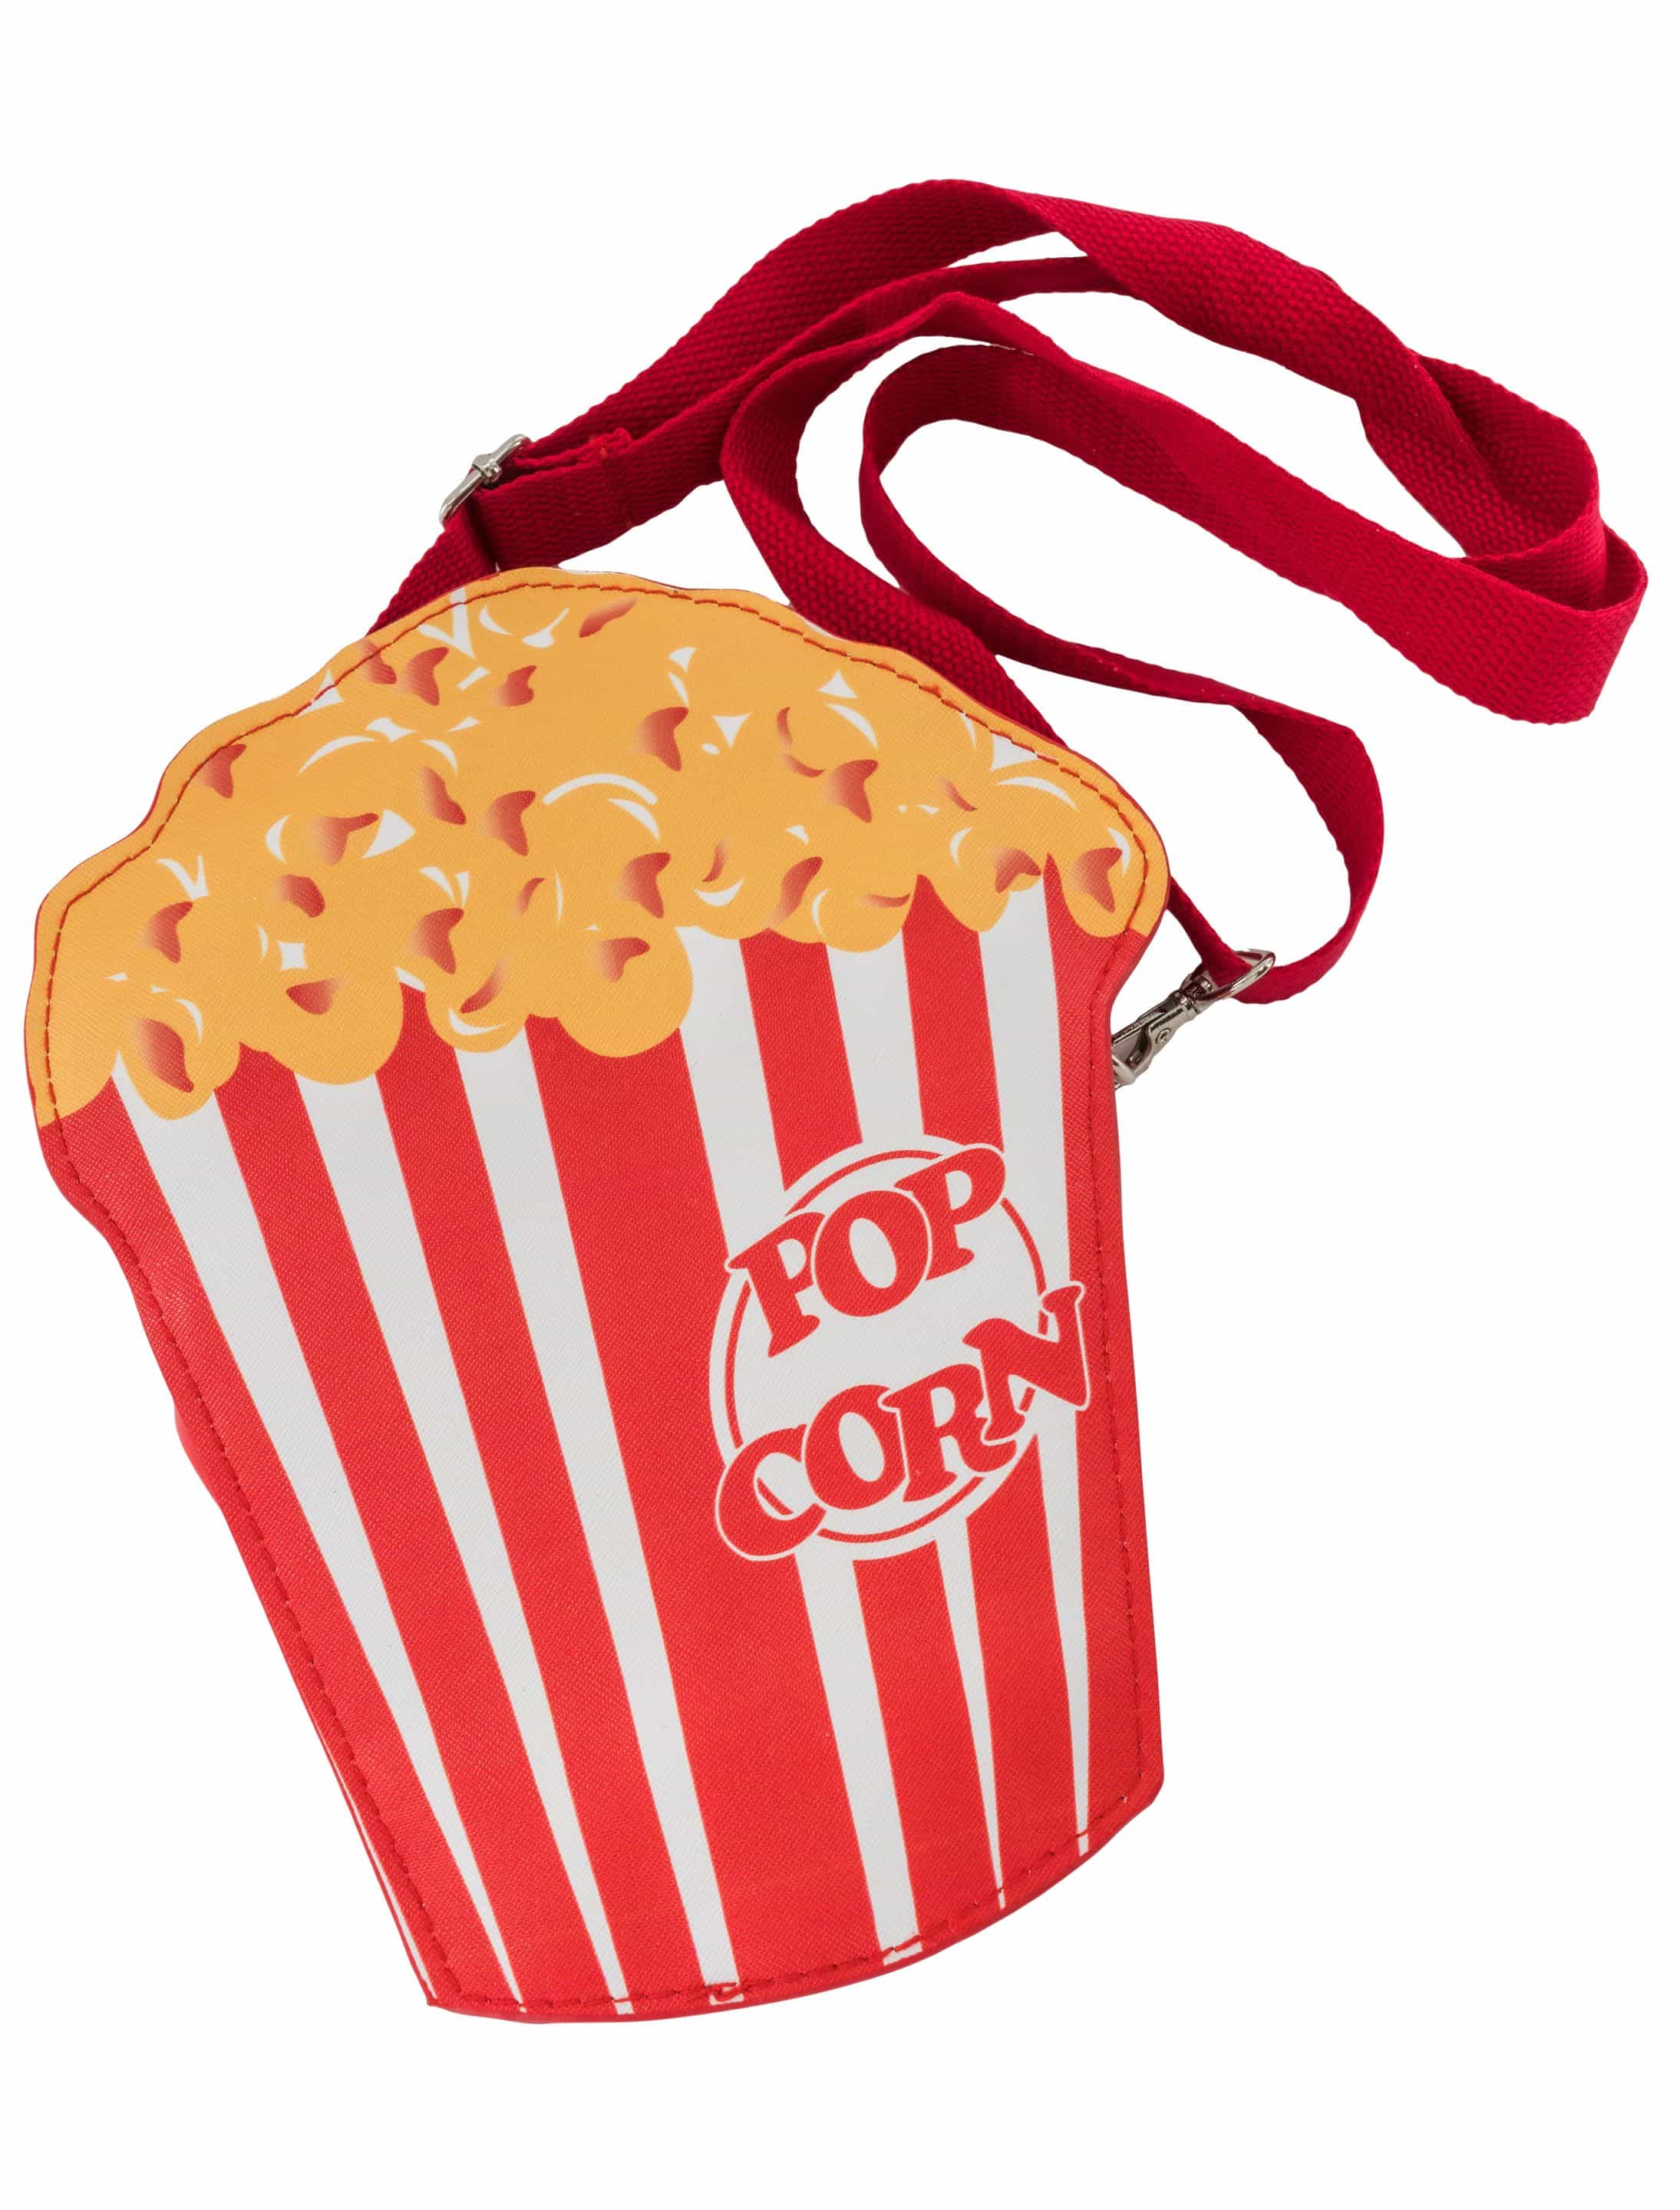 Tasche Popcorn rot/weiß